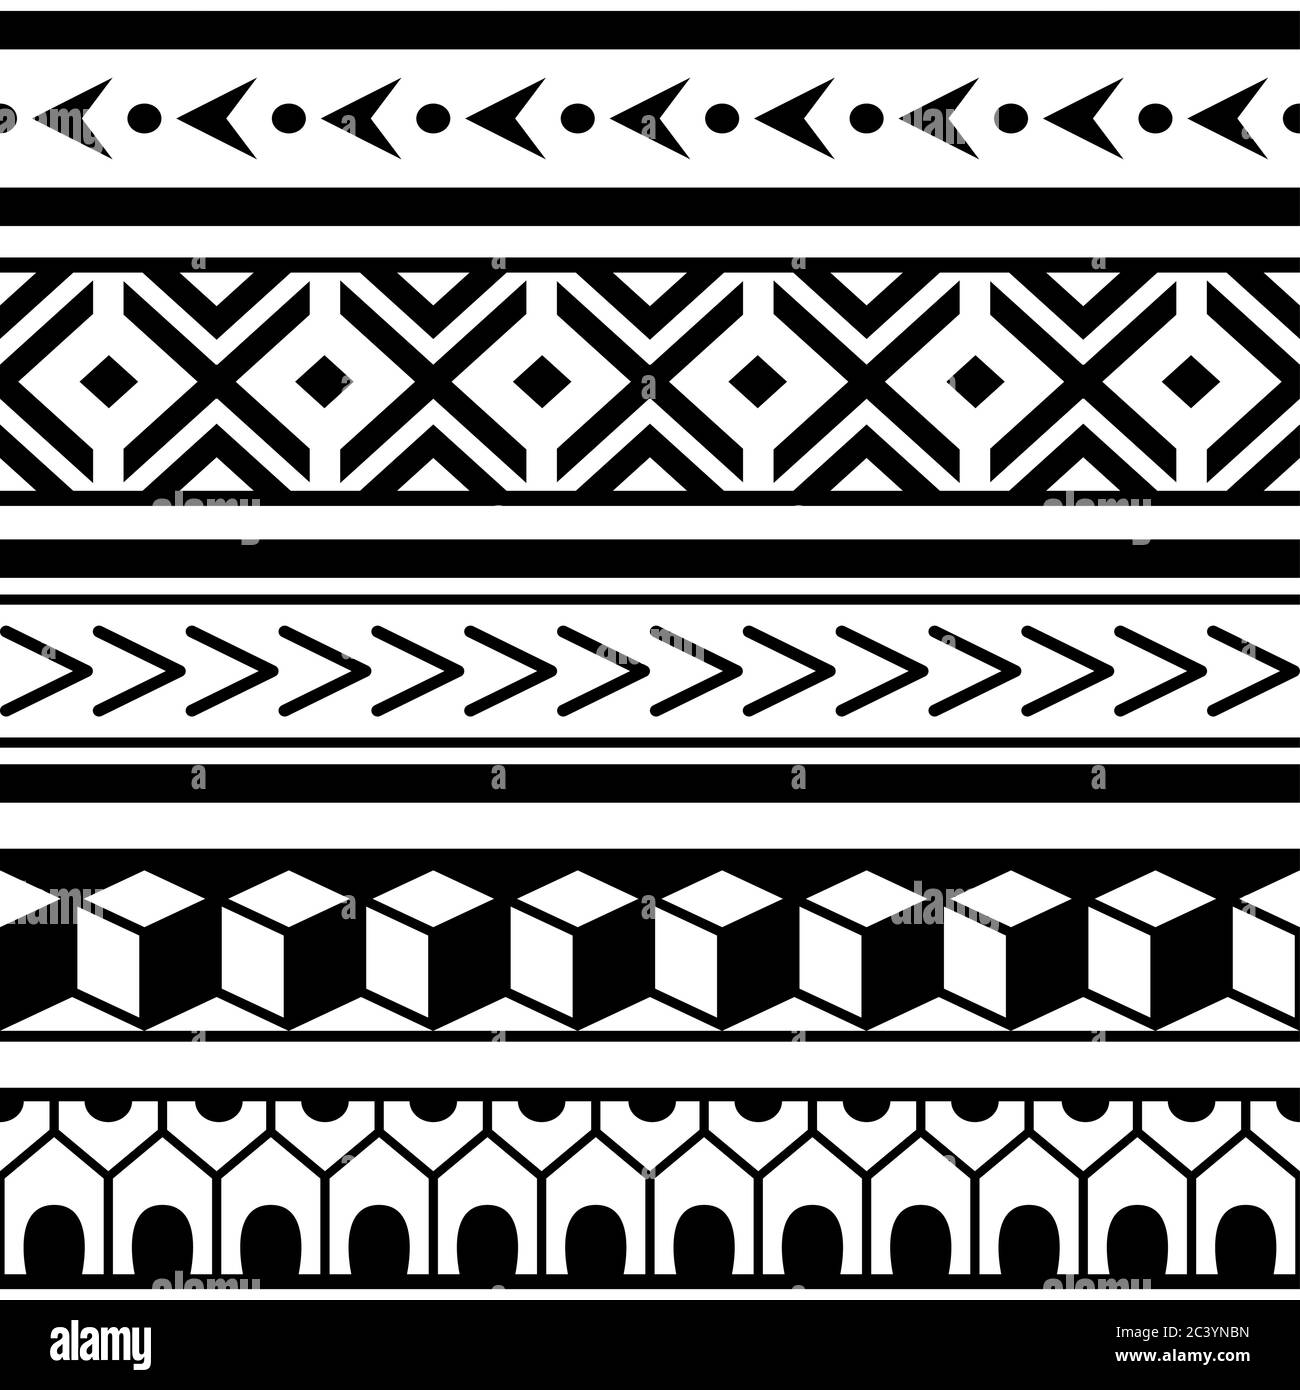 Polynesisches Maori geometrisches nahtloses Vektor-Muster, hawaiianisches Tribal-repetitives Design in Schwarz und Weiß Stock Vektor